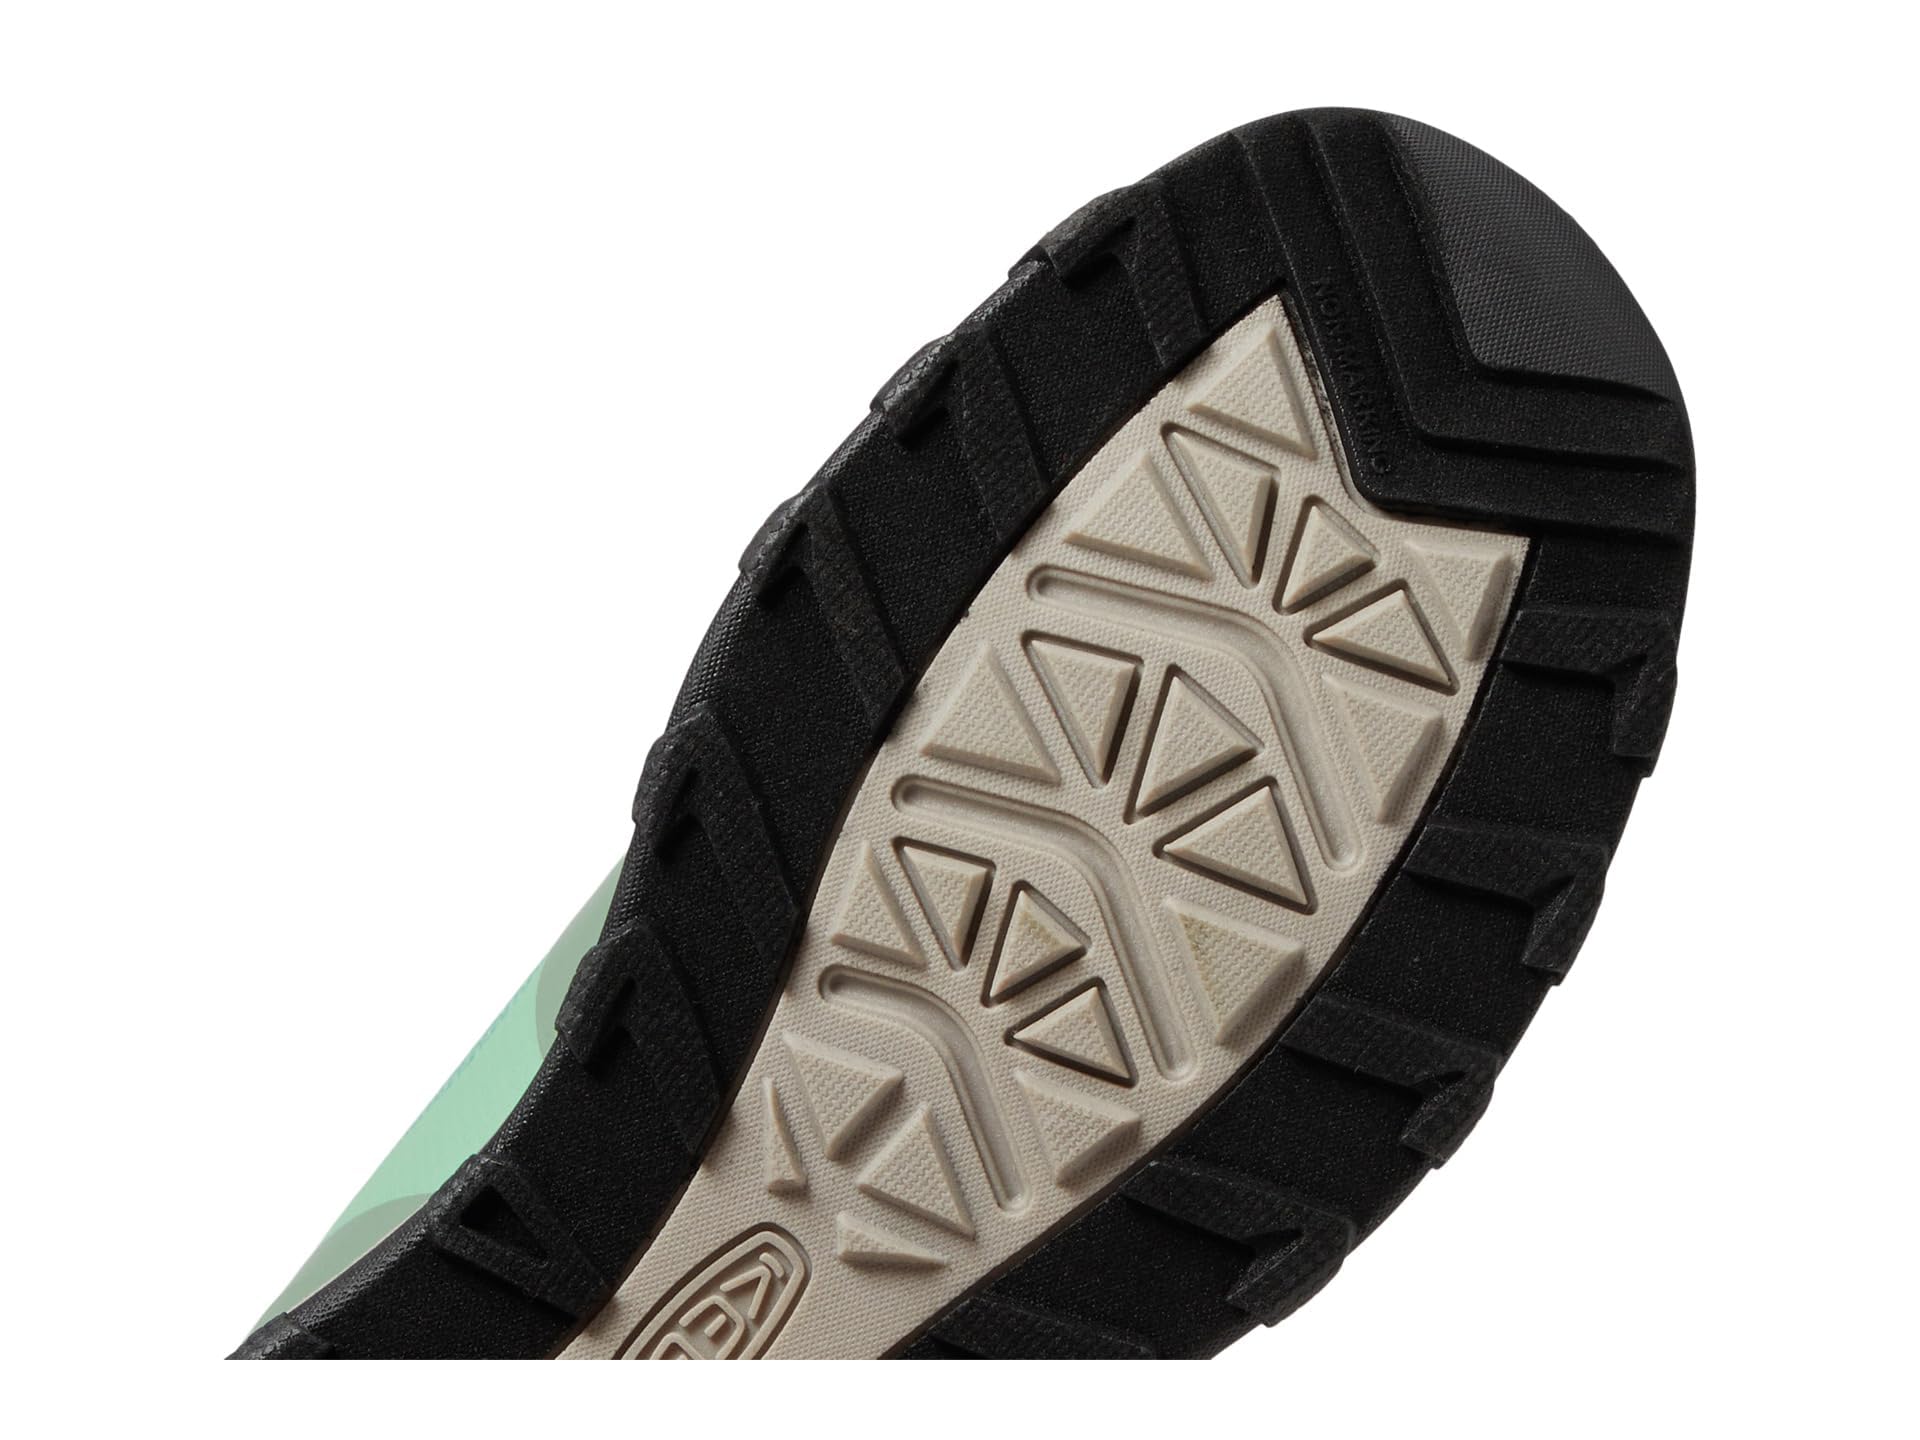 KEEN Wanduro Mid Height Waterproof Easy On Durable Sneaker Hiking Boots, Granite Green/Ibis Rose, 3 US Unisex Big Kid